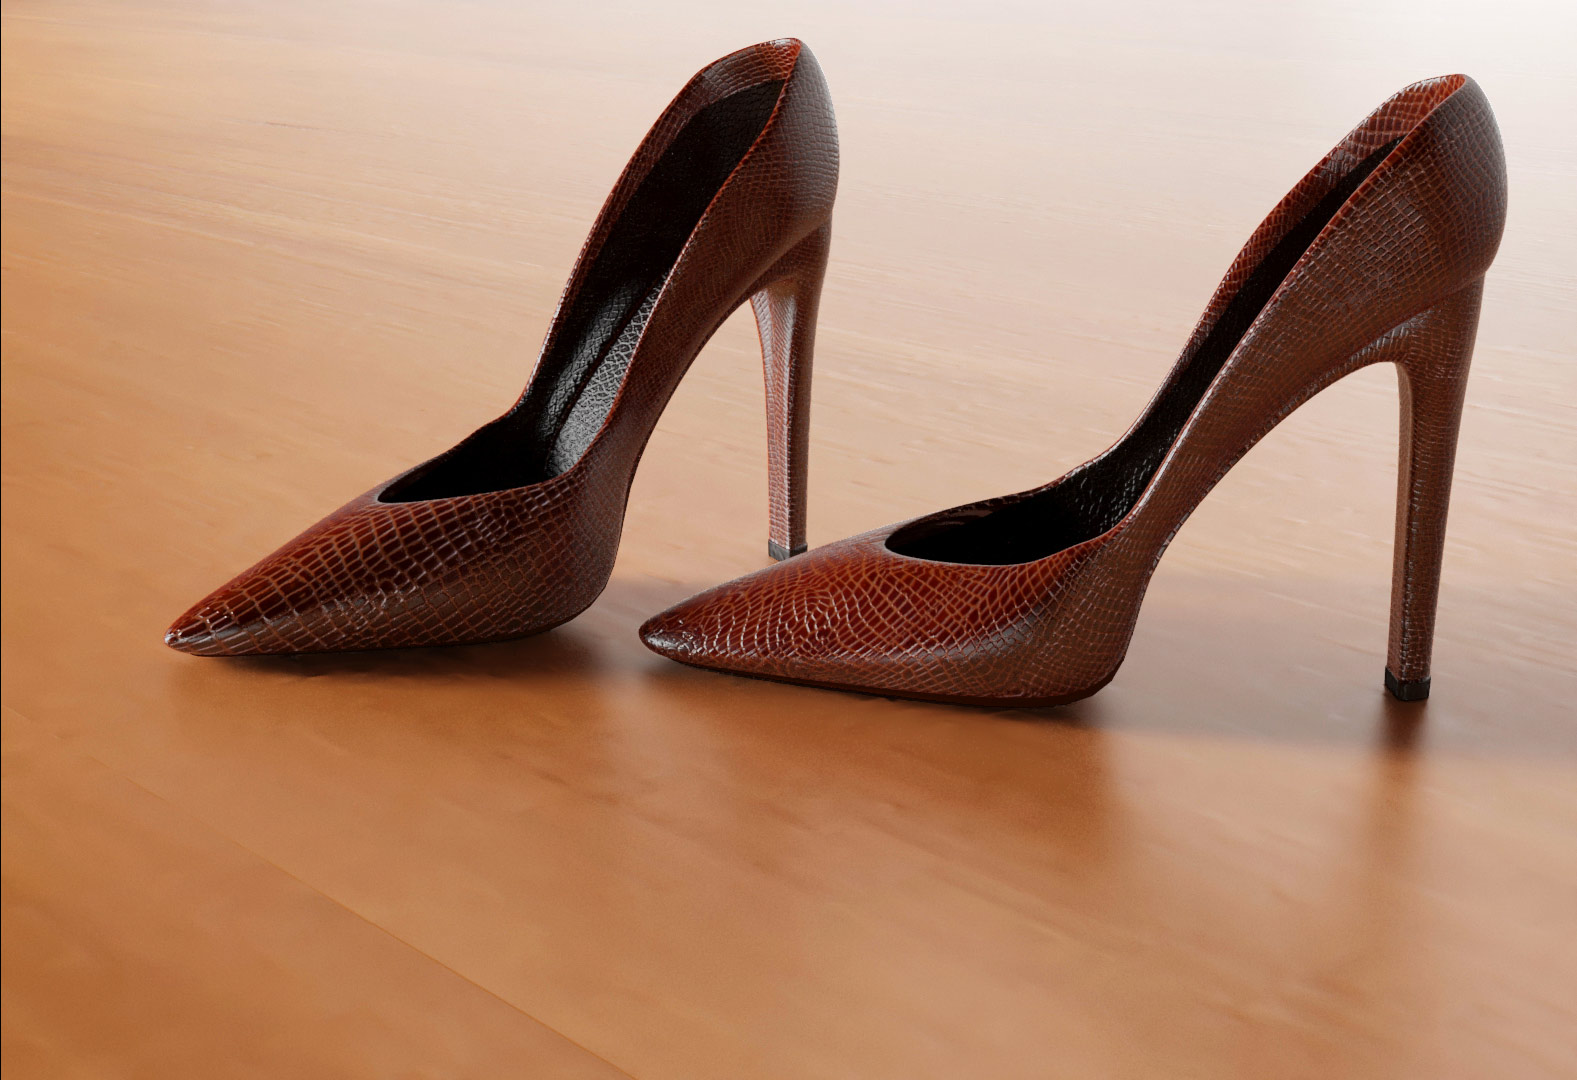 Modélisation 3D de chaussures, escarpins - Graphiste 3D freelance